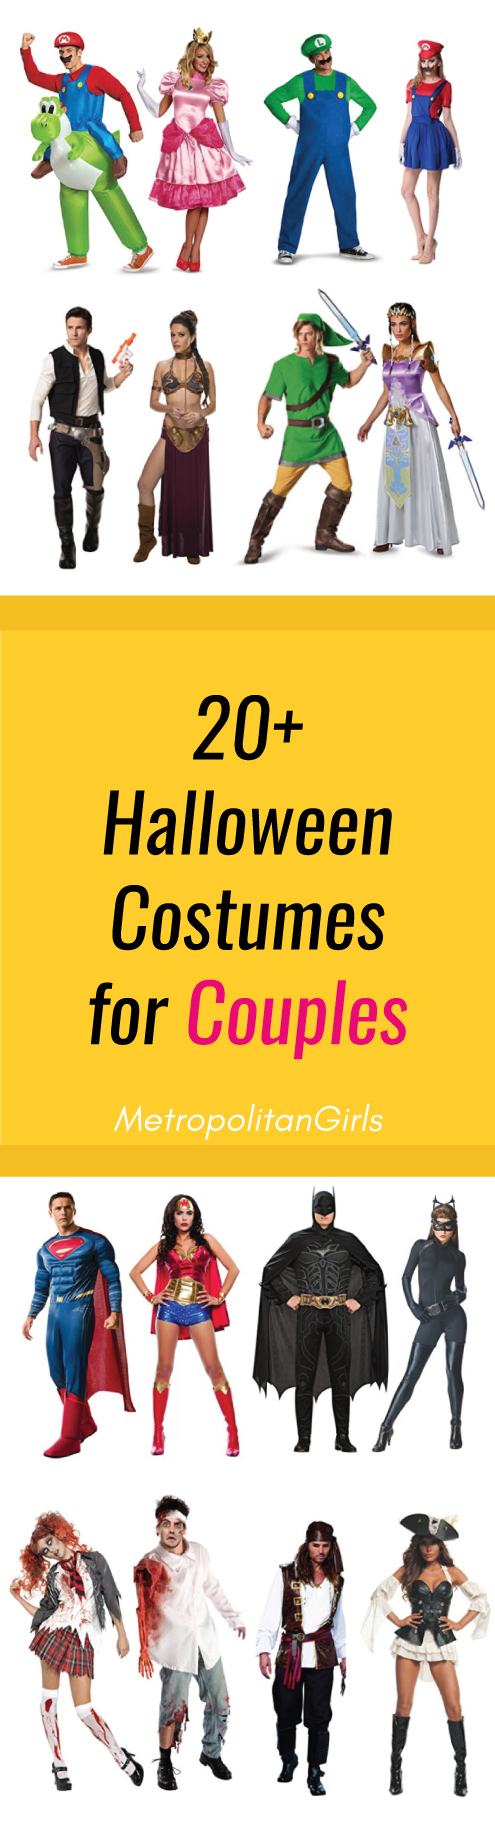 20+ Halloween Couple Costume Ideas